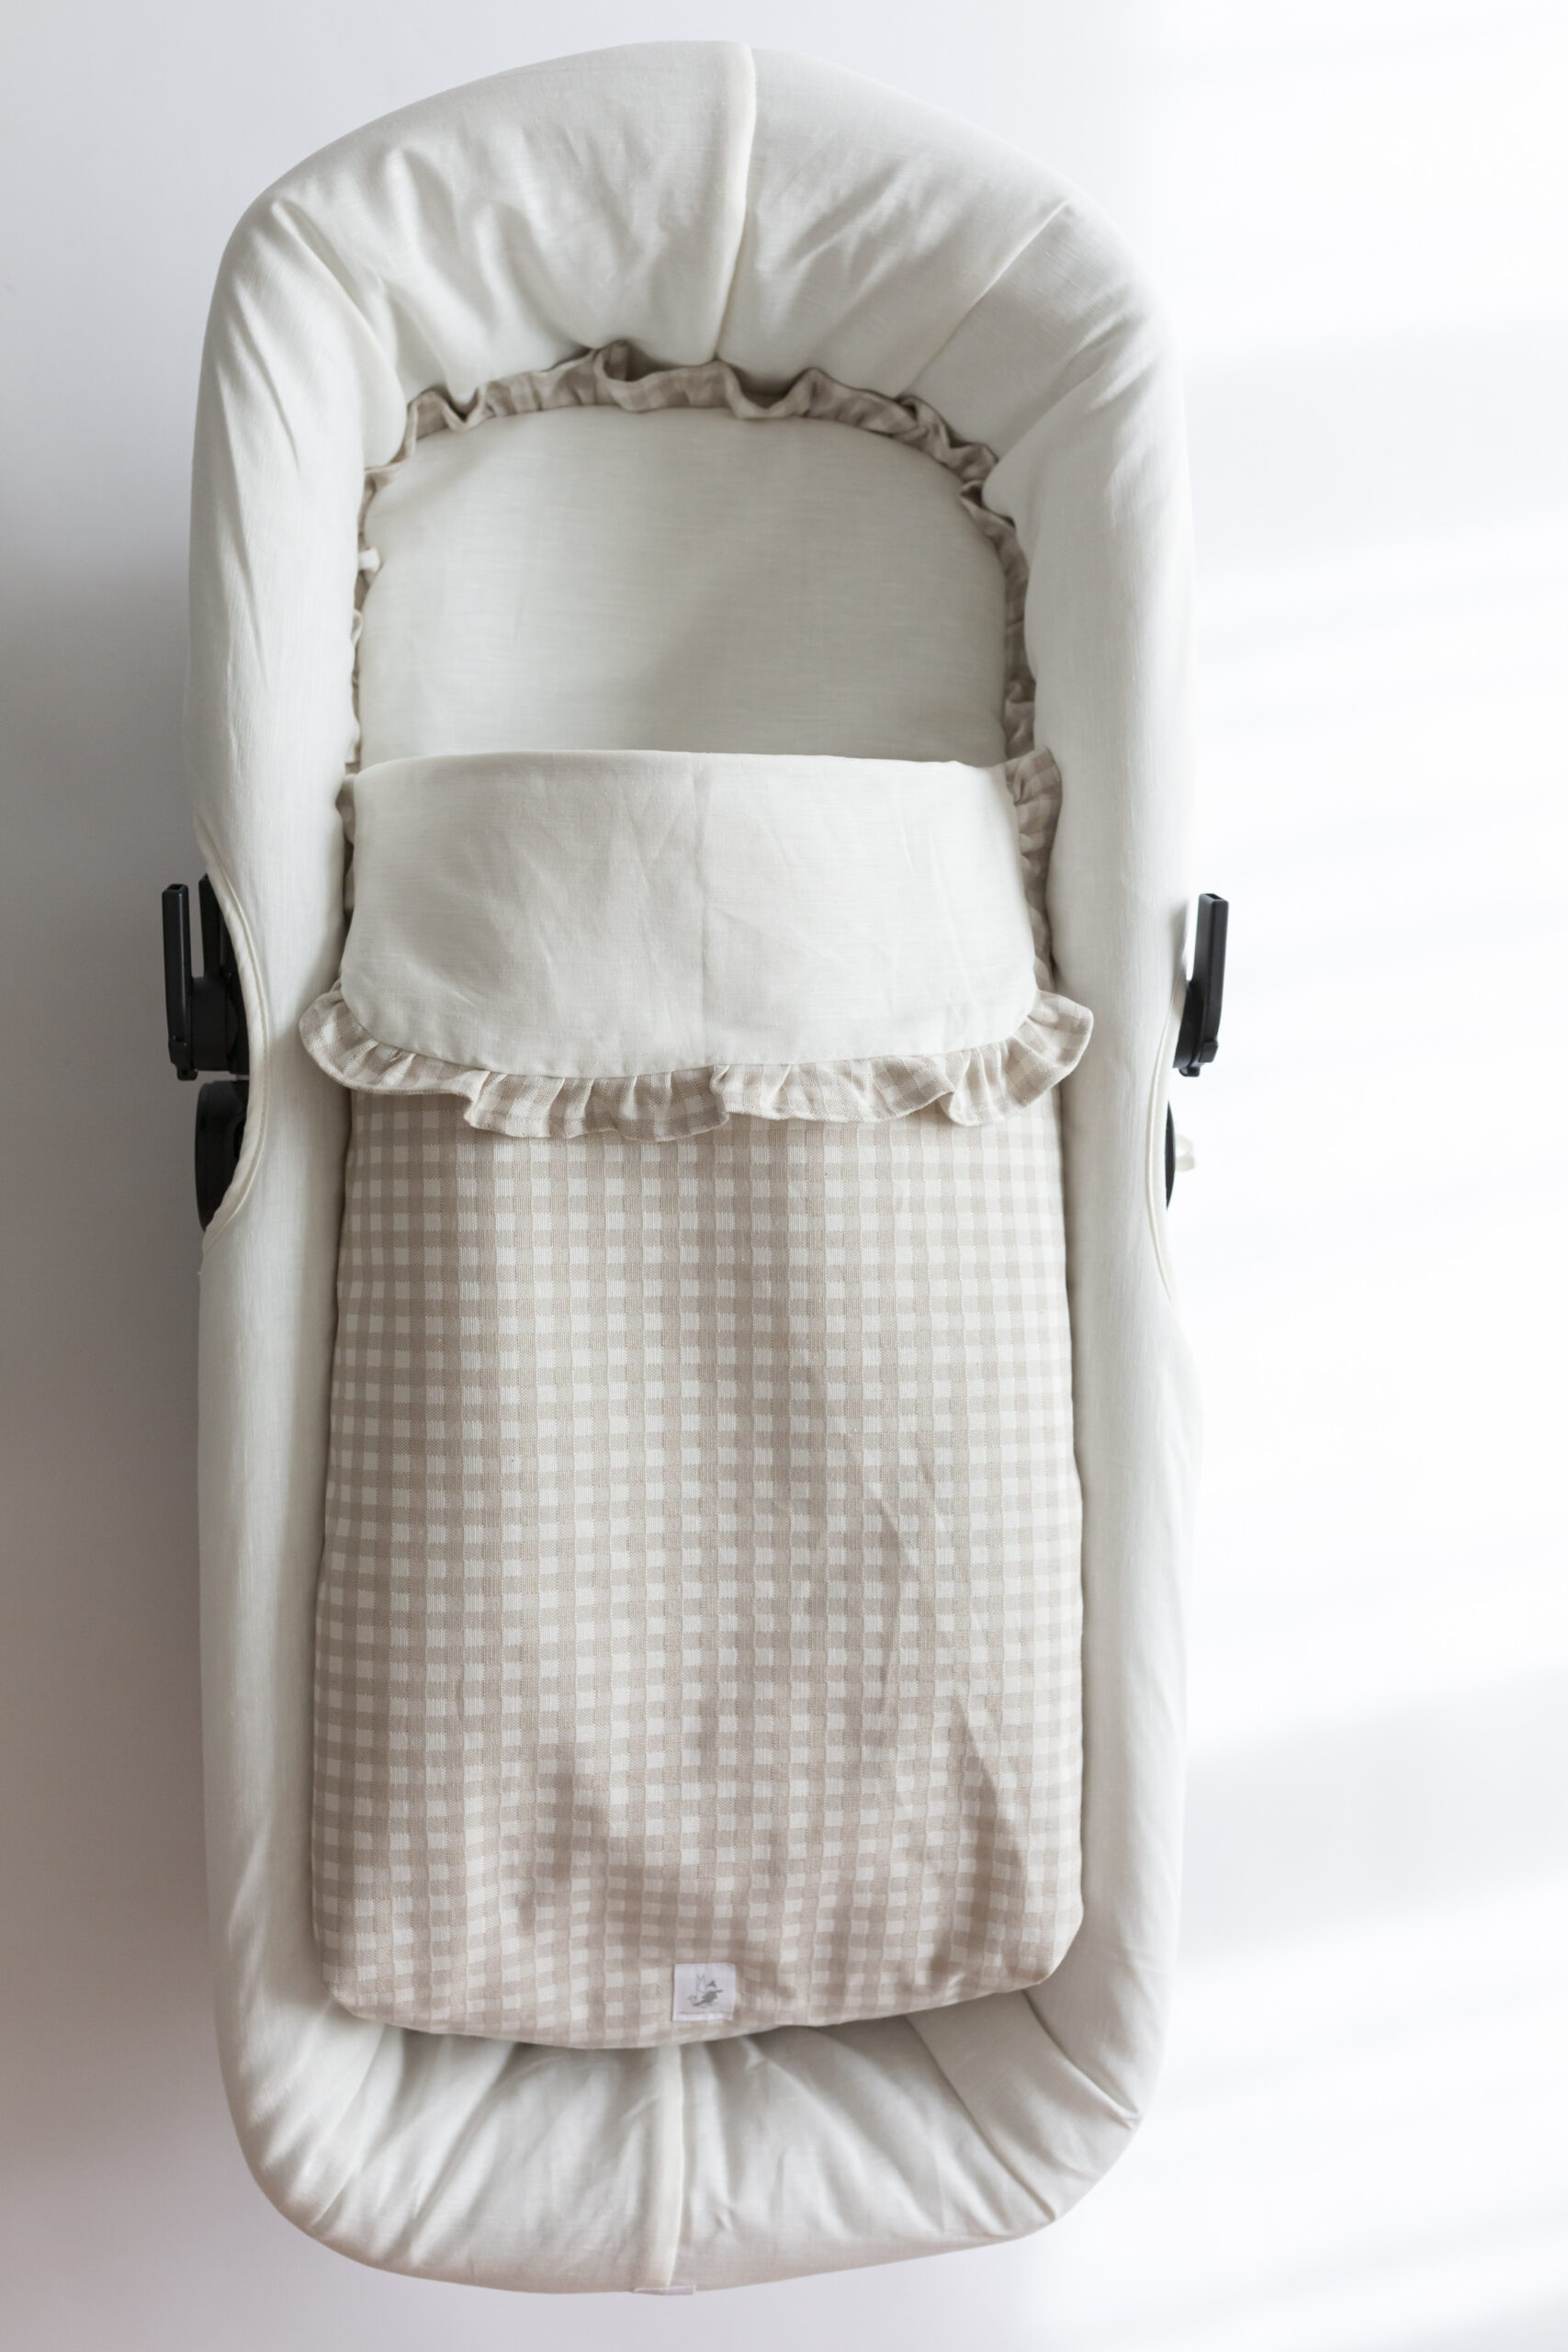 Sacos para carrito de bebé - sacos personalizados para carros de